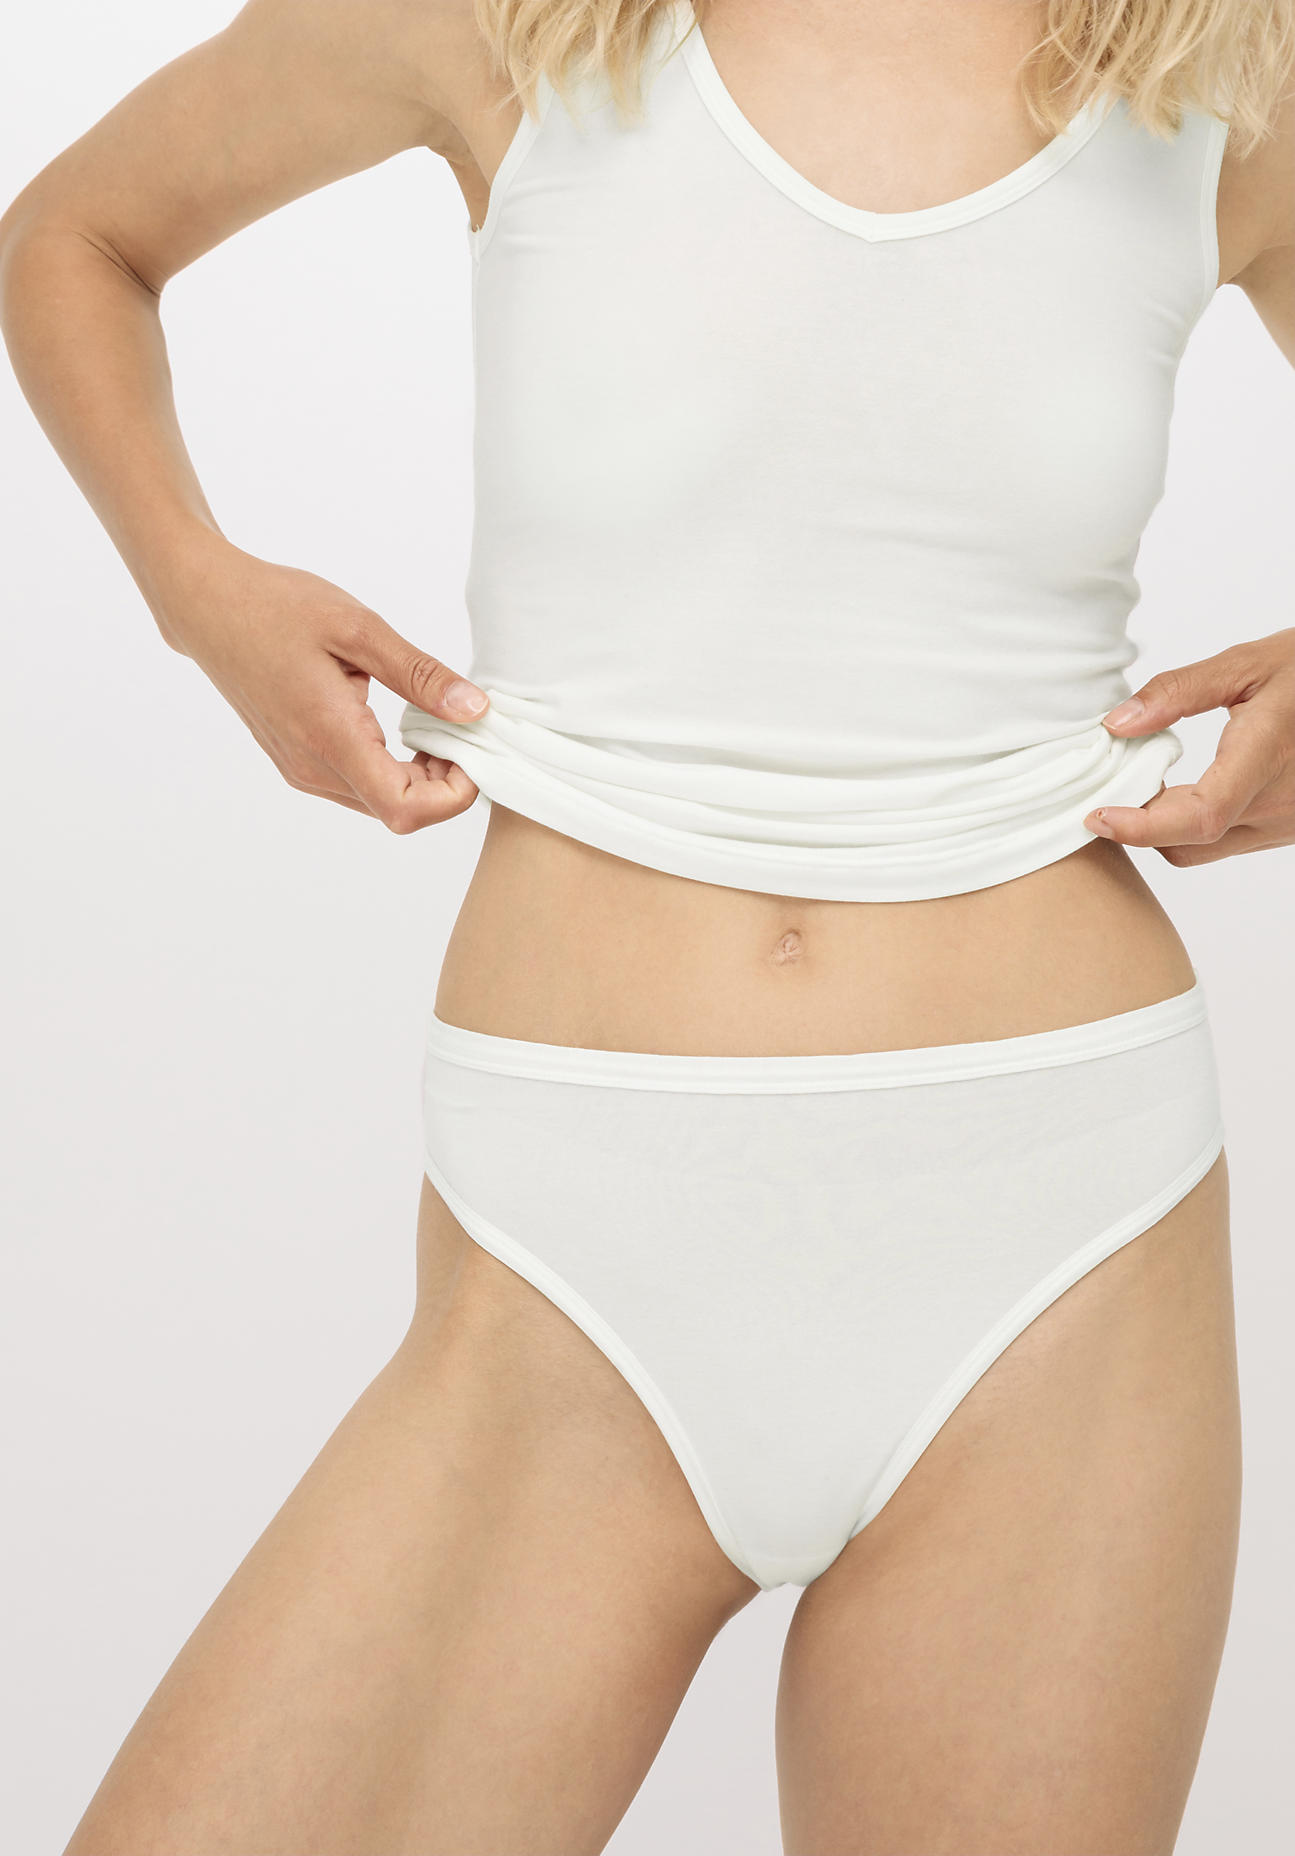 hessnatur Damen Slip high waist aus Bio-Baumwolle und Tencel™ Modal - weiß - Größe 34